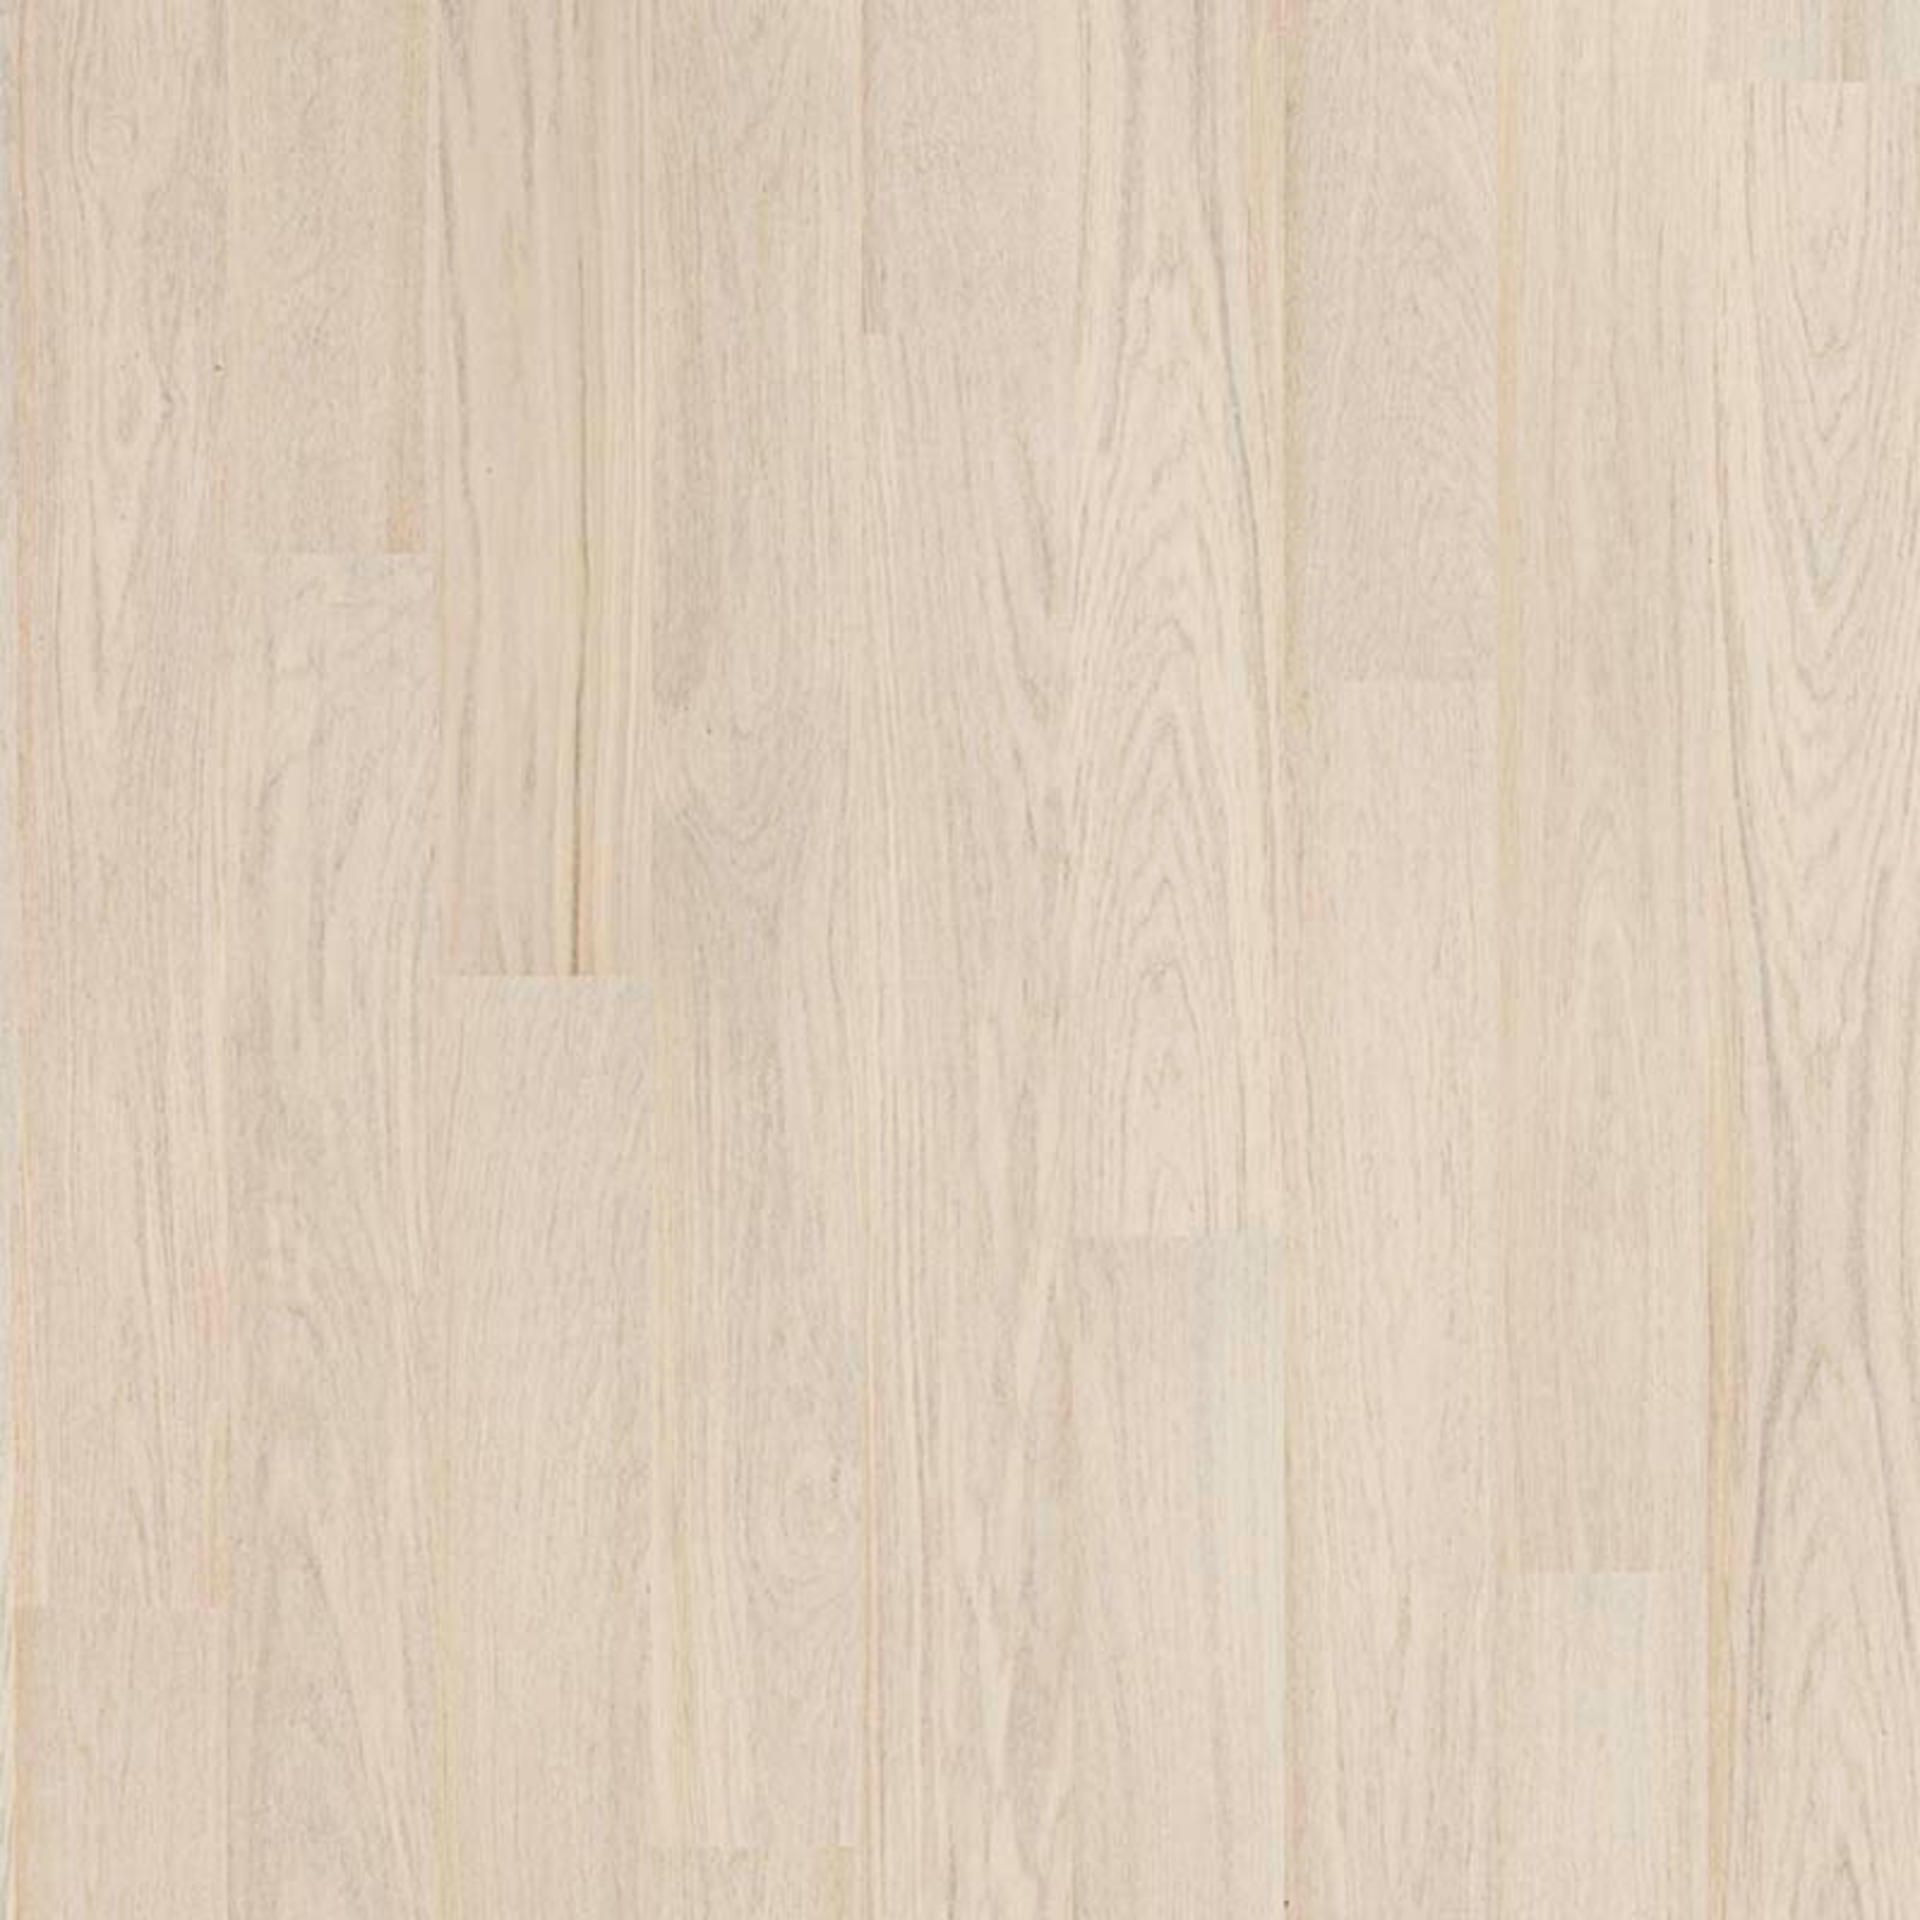 Holzboden Eiche Cotton weiß 1 Stab MADRID-TB15 Planke 190 x 2200 mm